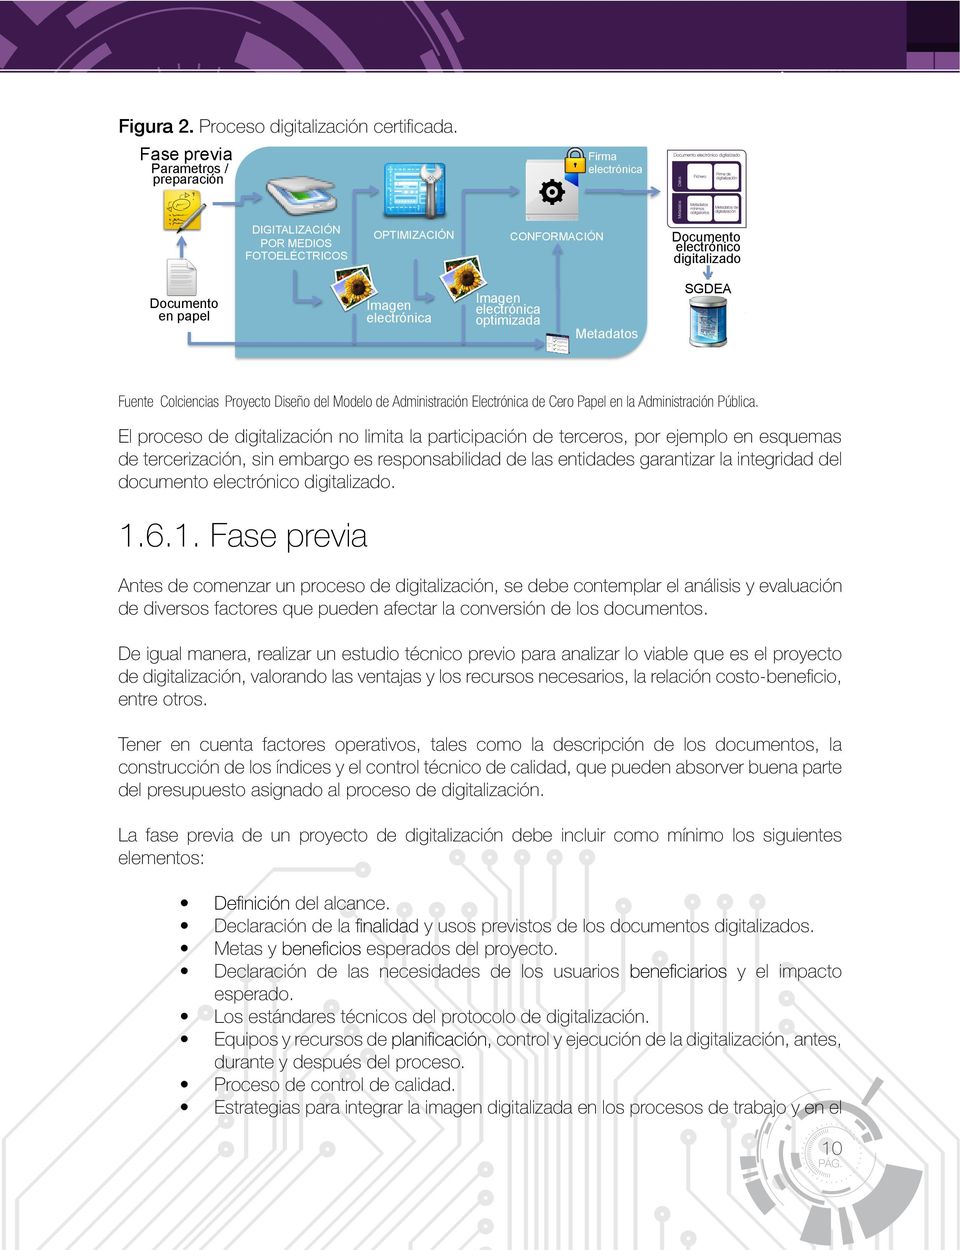 Imagen electrónica optimizada Metadatos SGDEA Fuente Colciencias Proyecto Diseño del Modelo de Administración Electrónica de Cero Papel en la Administración Pública.